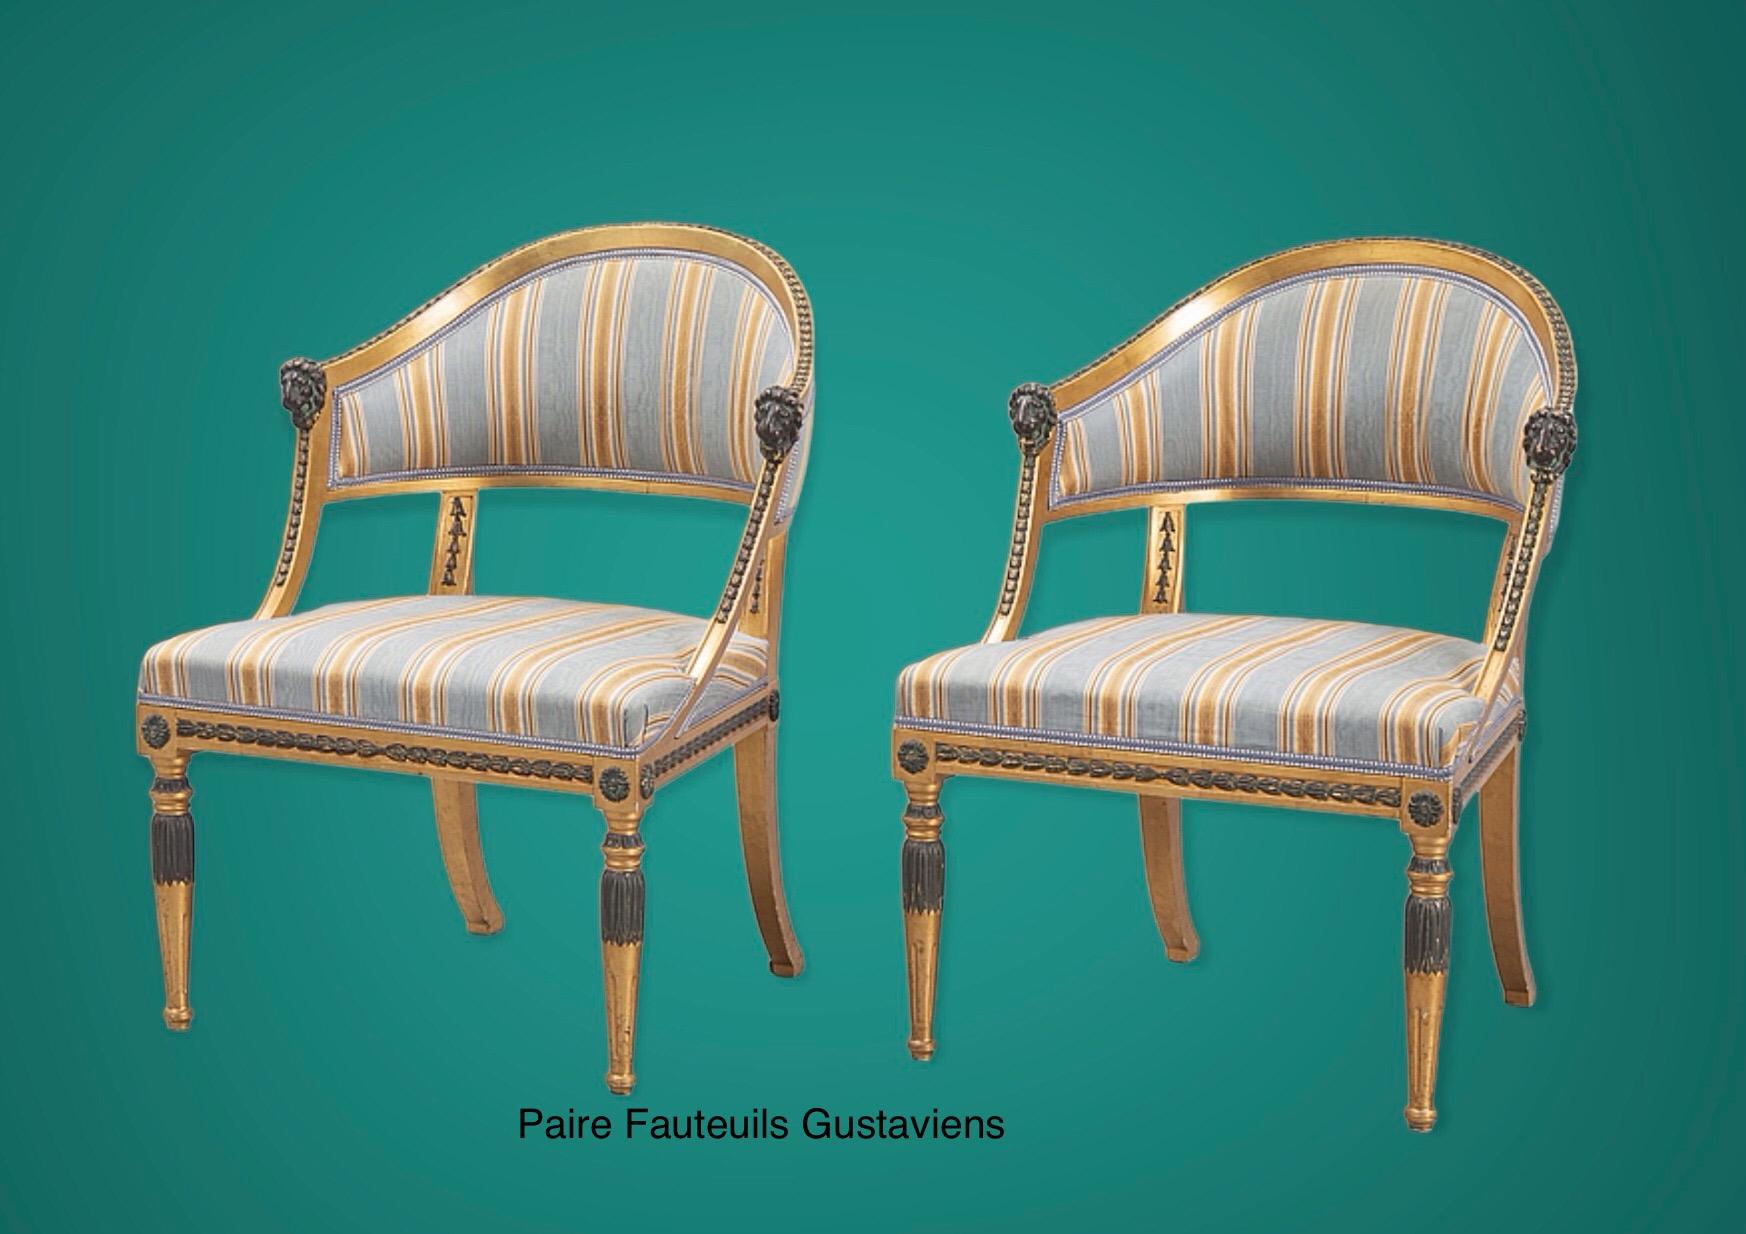 Dieses Paar großer schwedischer Sessel stellt einen Gipfel an Eleganz und Komfort dar. 
Die leichte neoklassische Form mit halbrundem, großzügig nach hinten gerichtetem Heck vermittelt ein Komfortgefühl, wie man es in einem Luxussportwagen findet.